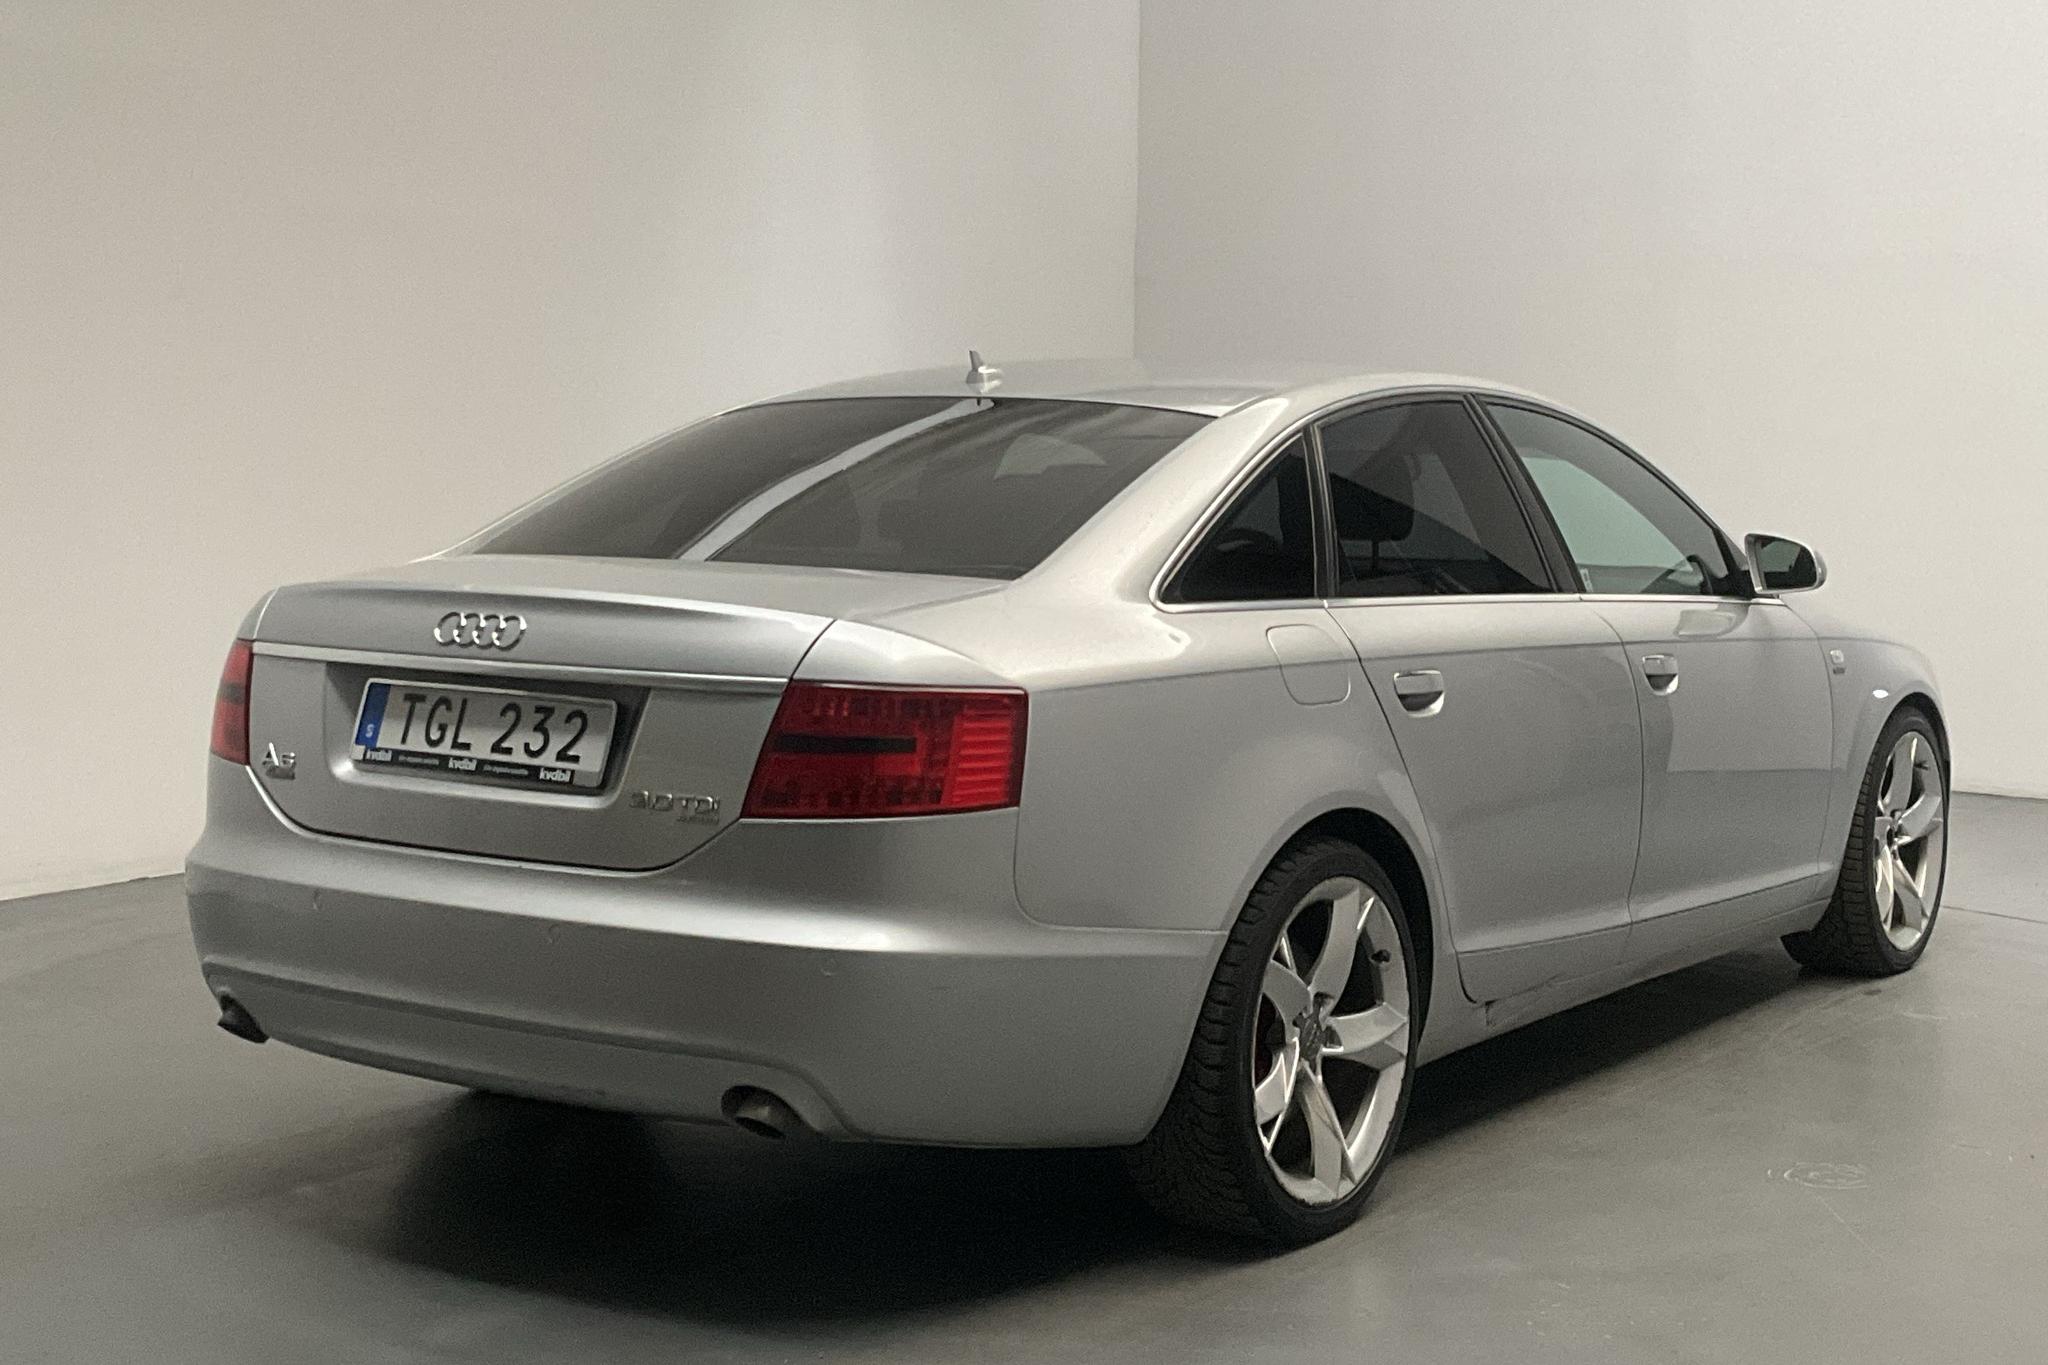 Audi A6 3.0 TDI quattro (233hk) - 222 510 km - Automatic - silver - 2008